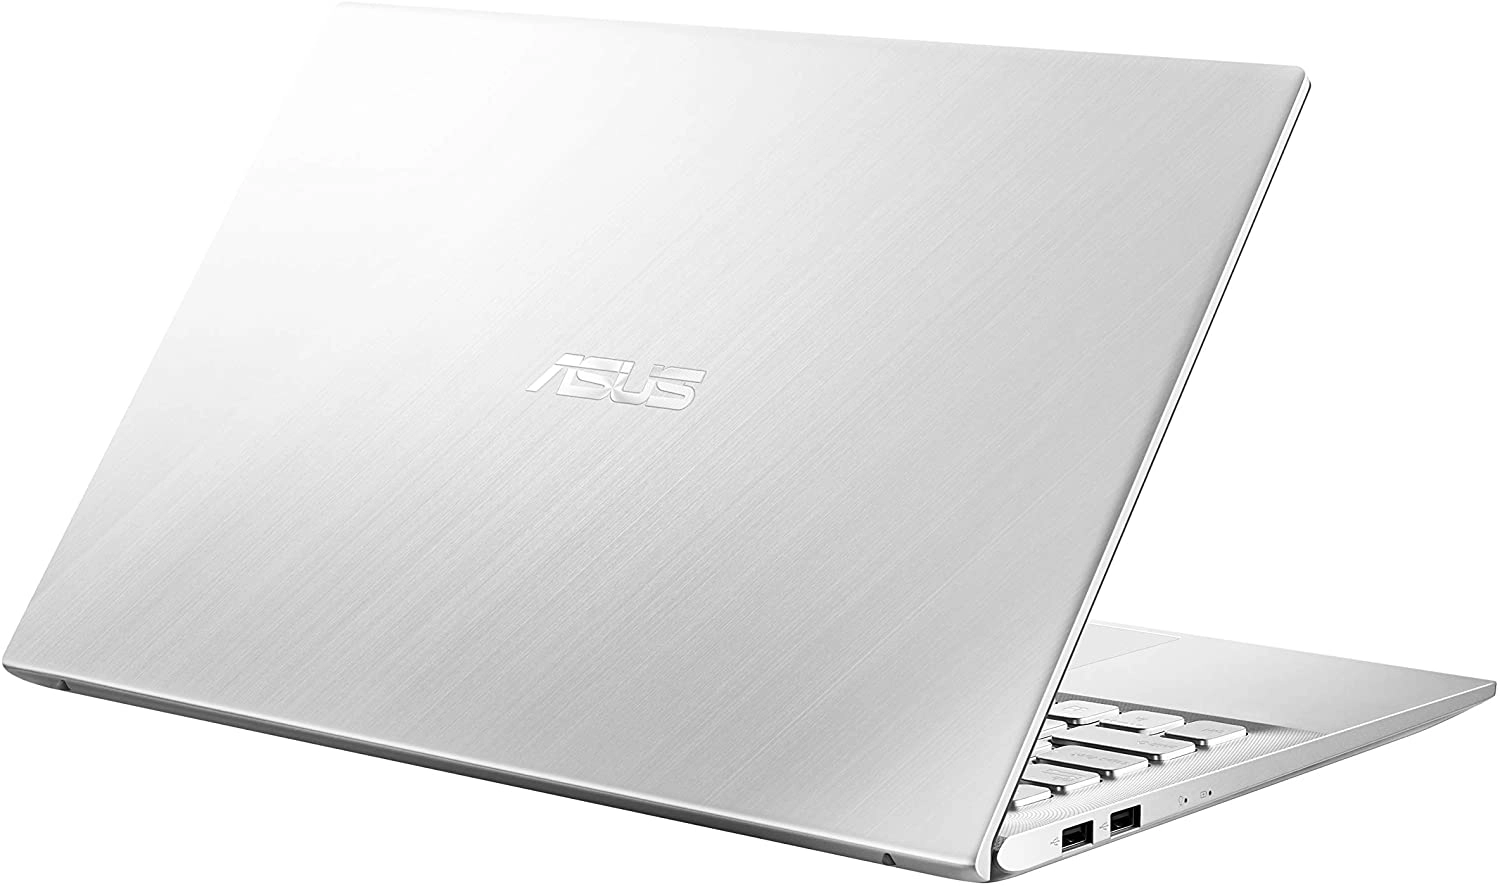 Asus S512JA-BQ1028 laptop image